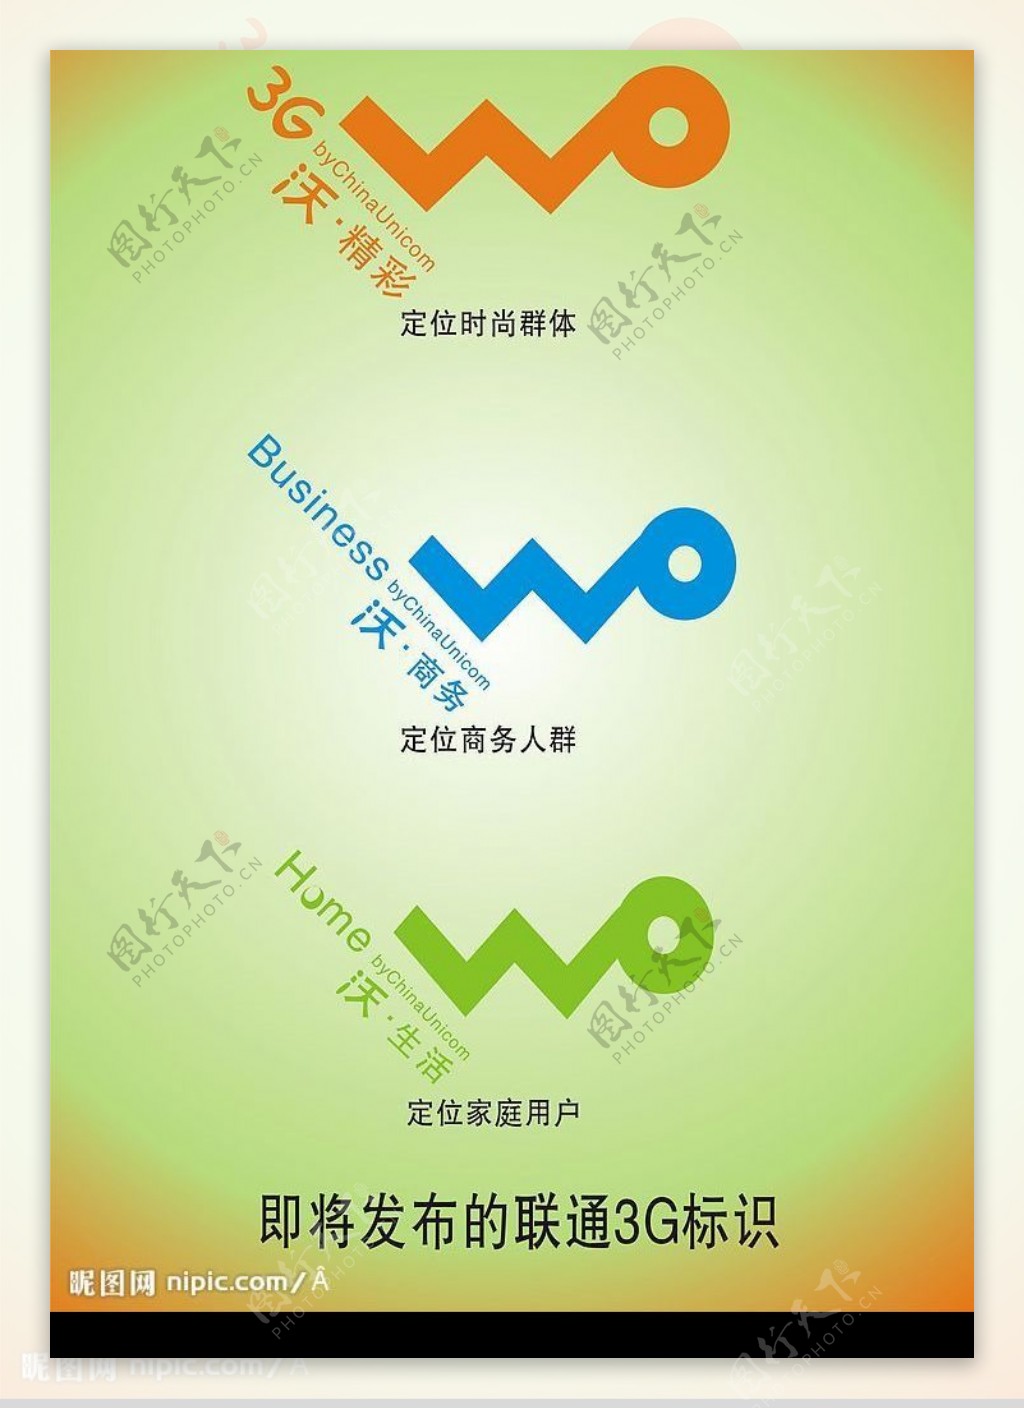 即将发布的中国联通3G新标识图片